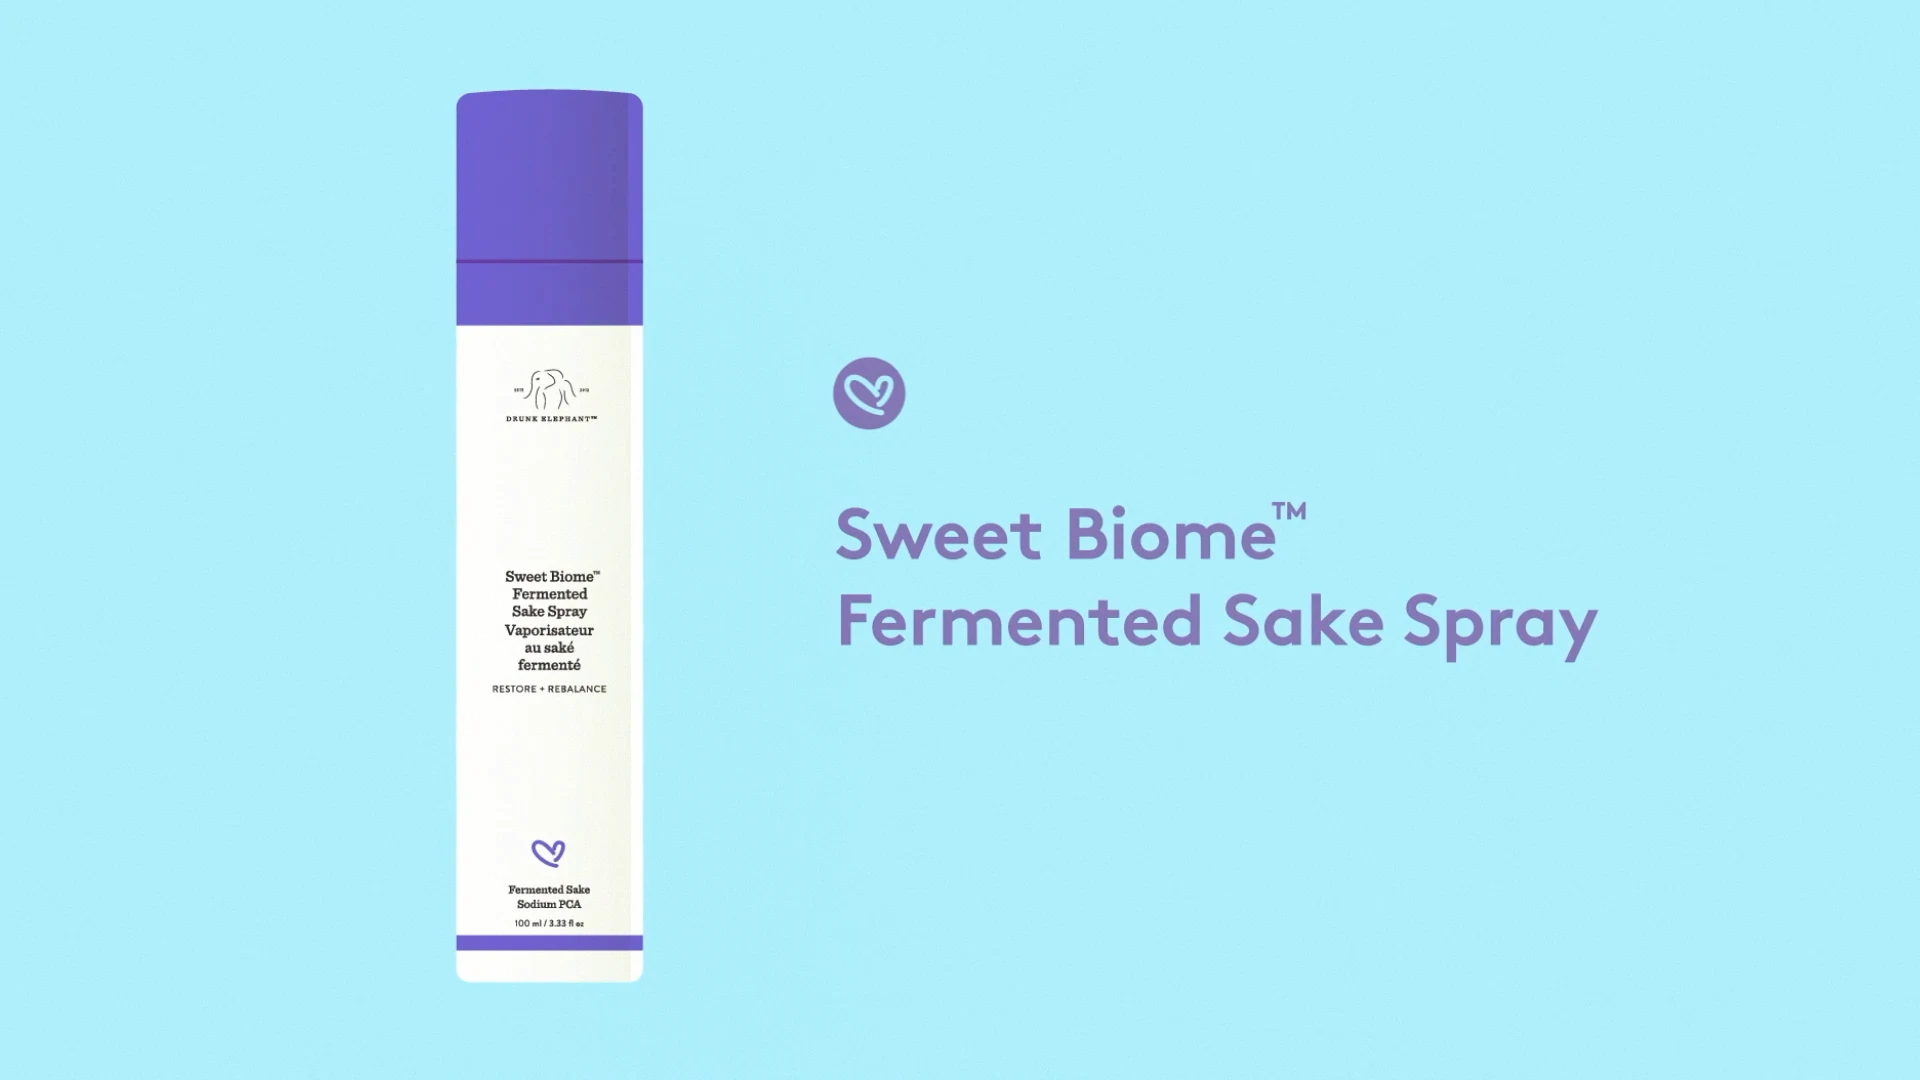 Video, in dem das Sweet Biome Fermented Sake Spray vorgestellt wird